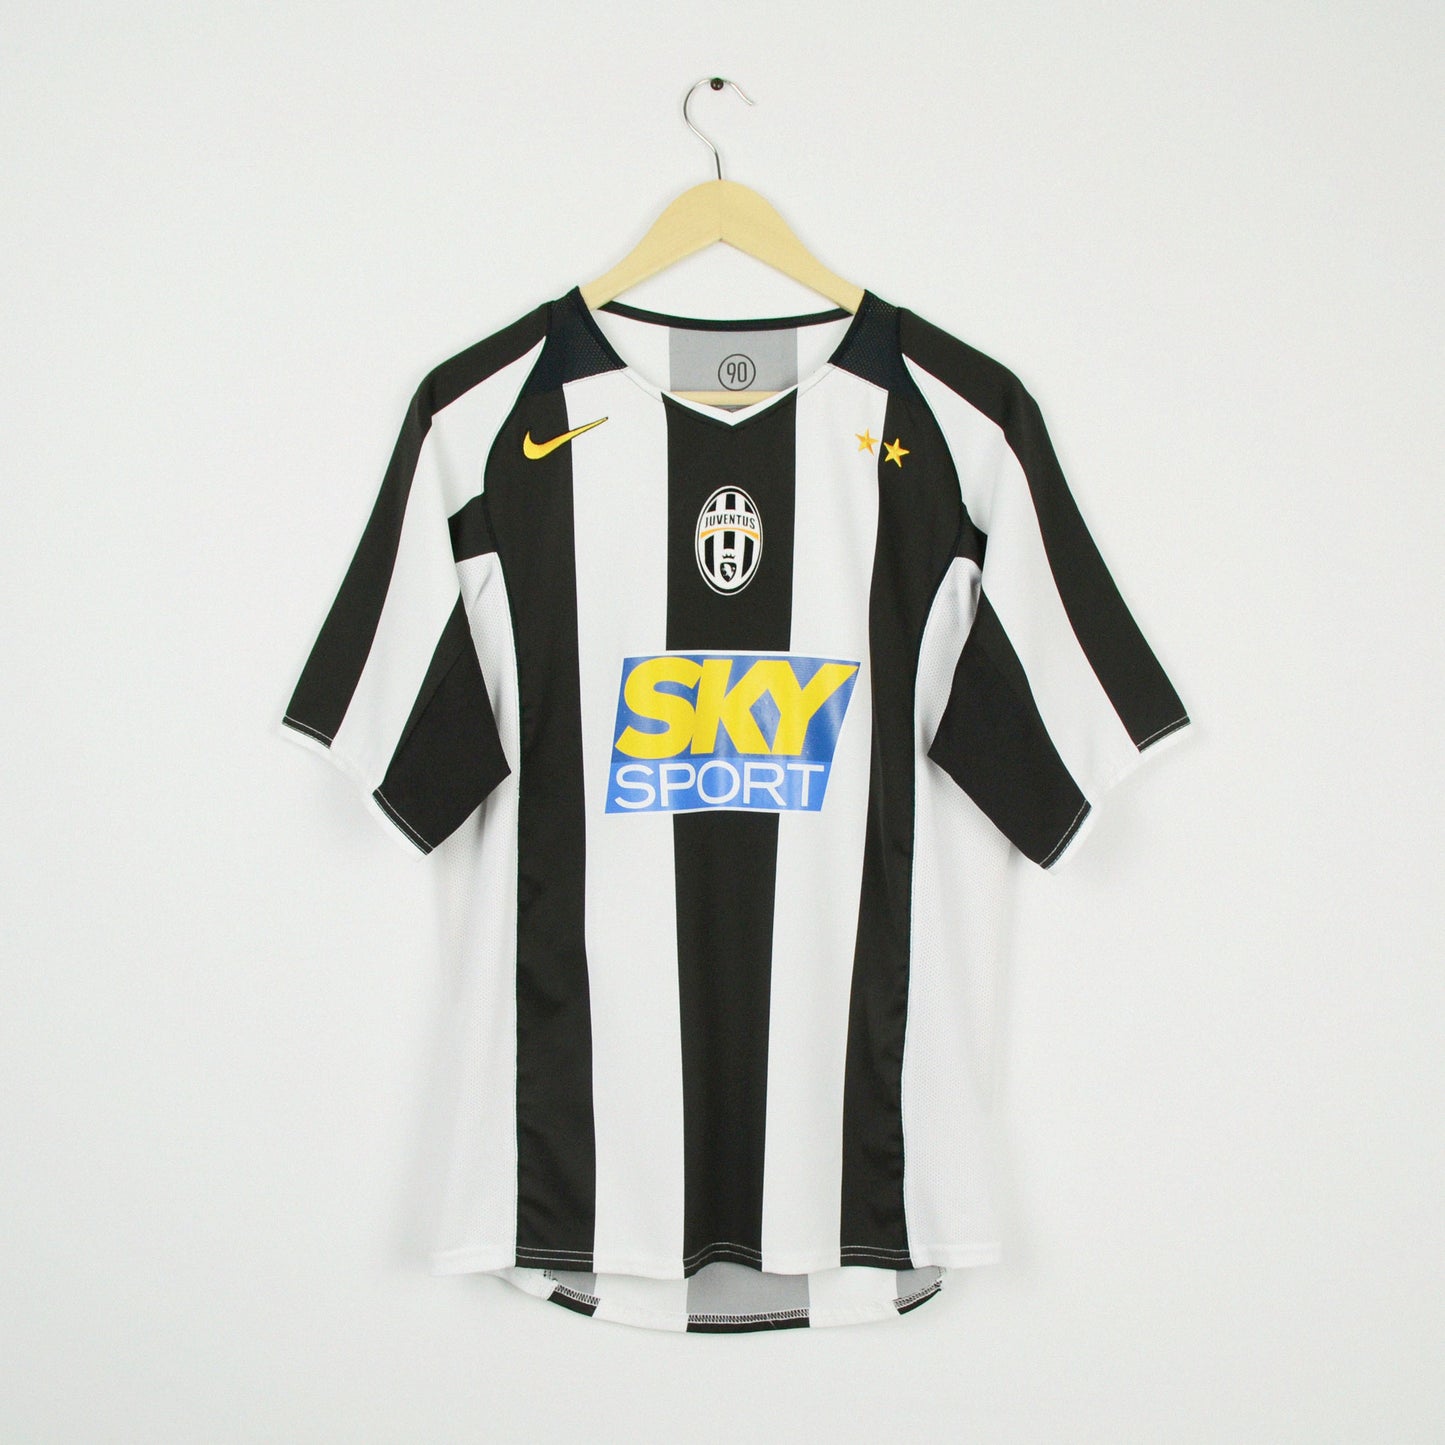 2004-05 Nike Juventus Home Shirt S